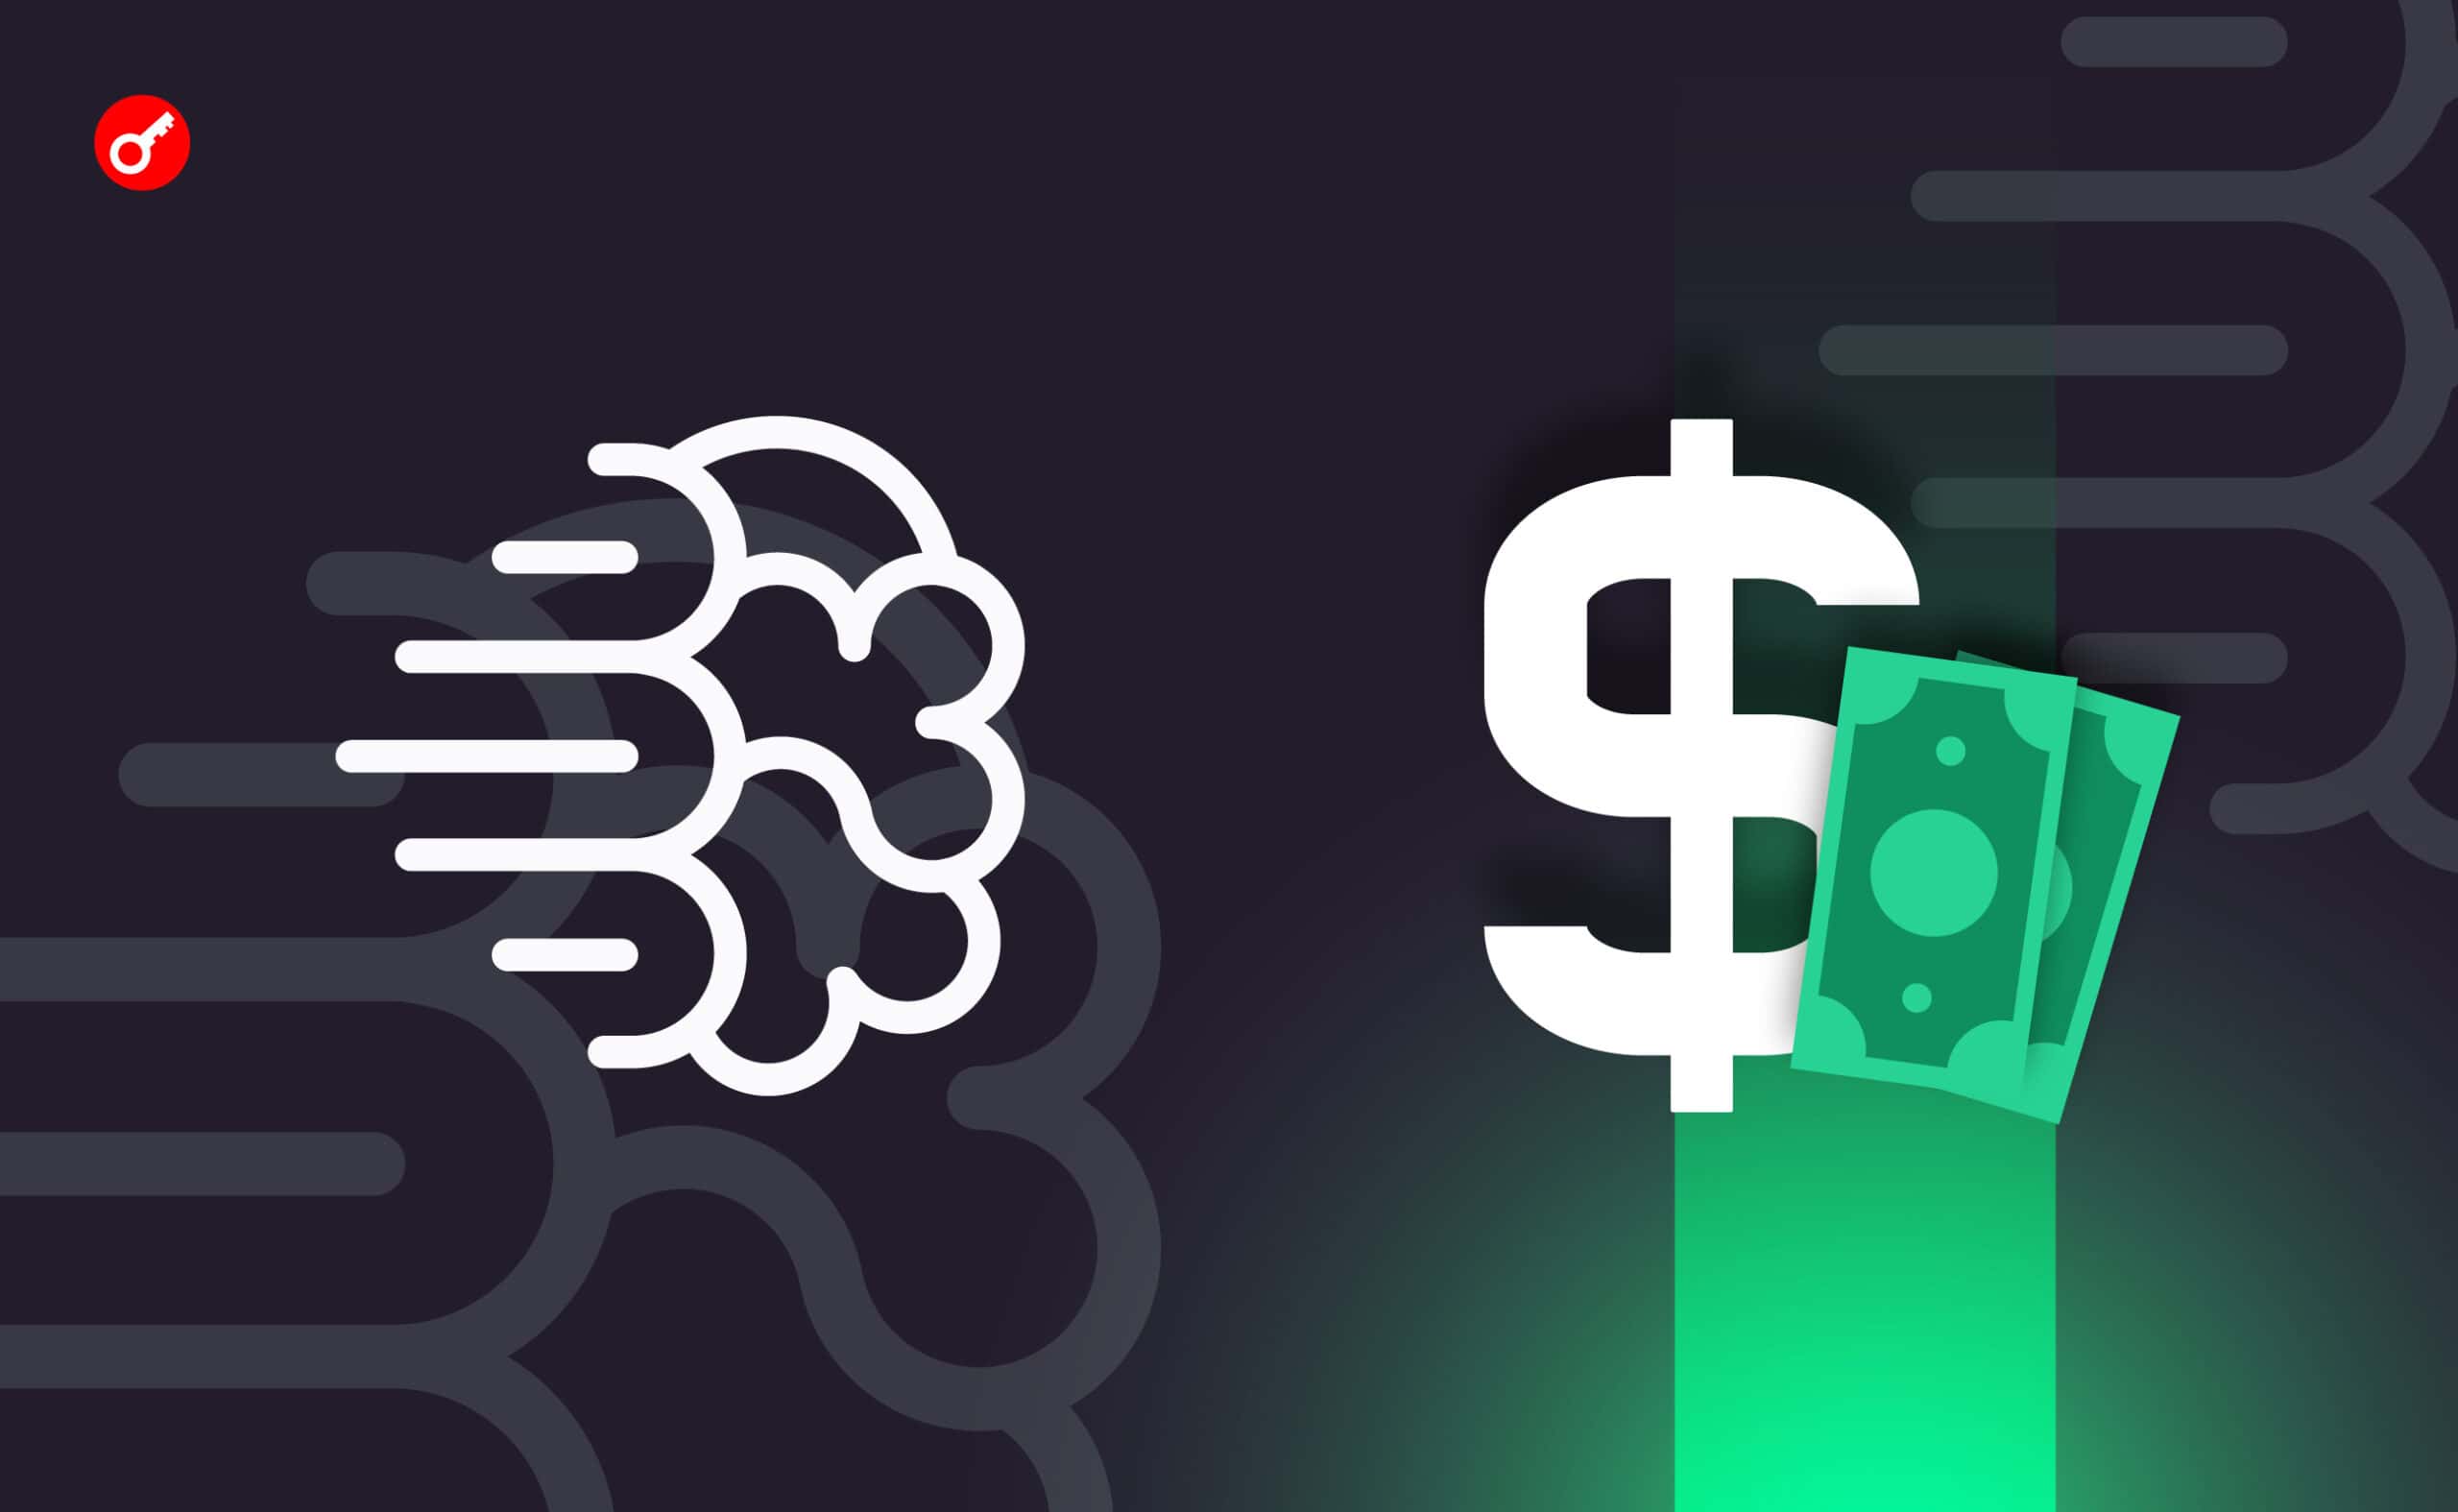 Проєкт Ideogram AI залучив $16,5 млн інвестицій. Головний колаж новини.